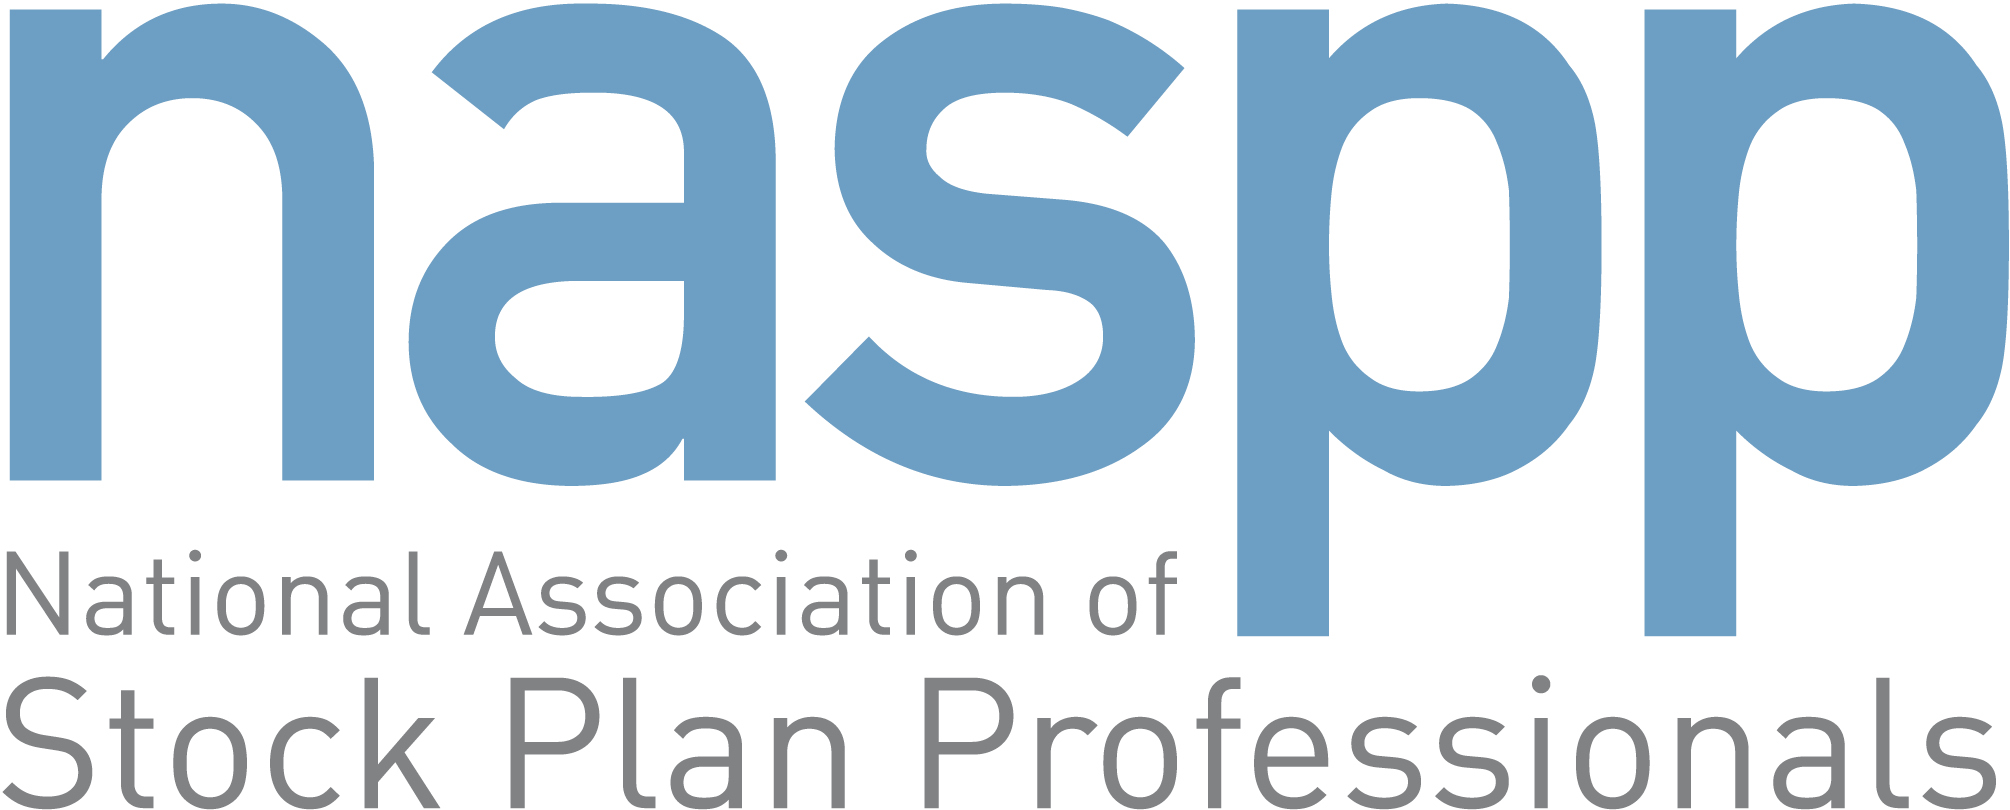 NASPP - Full Logo.jpg